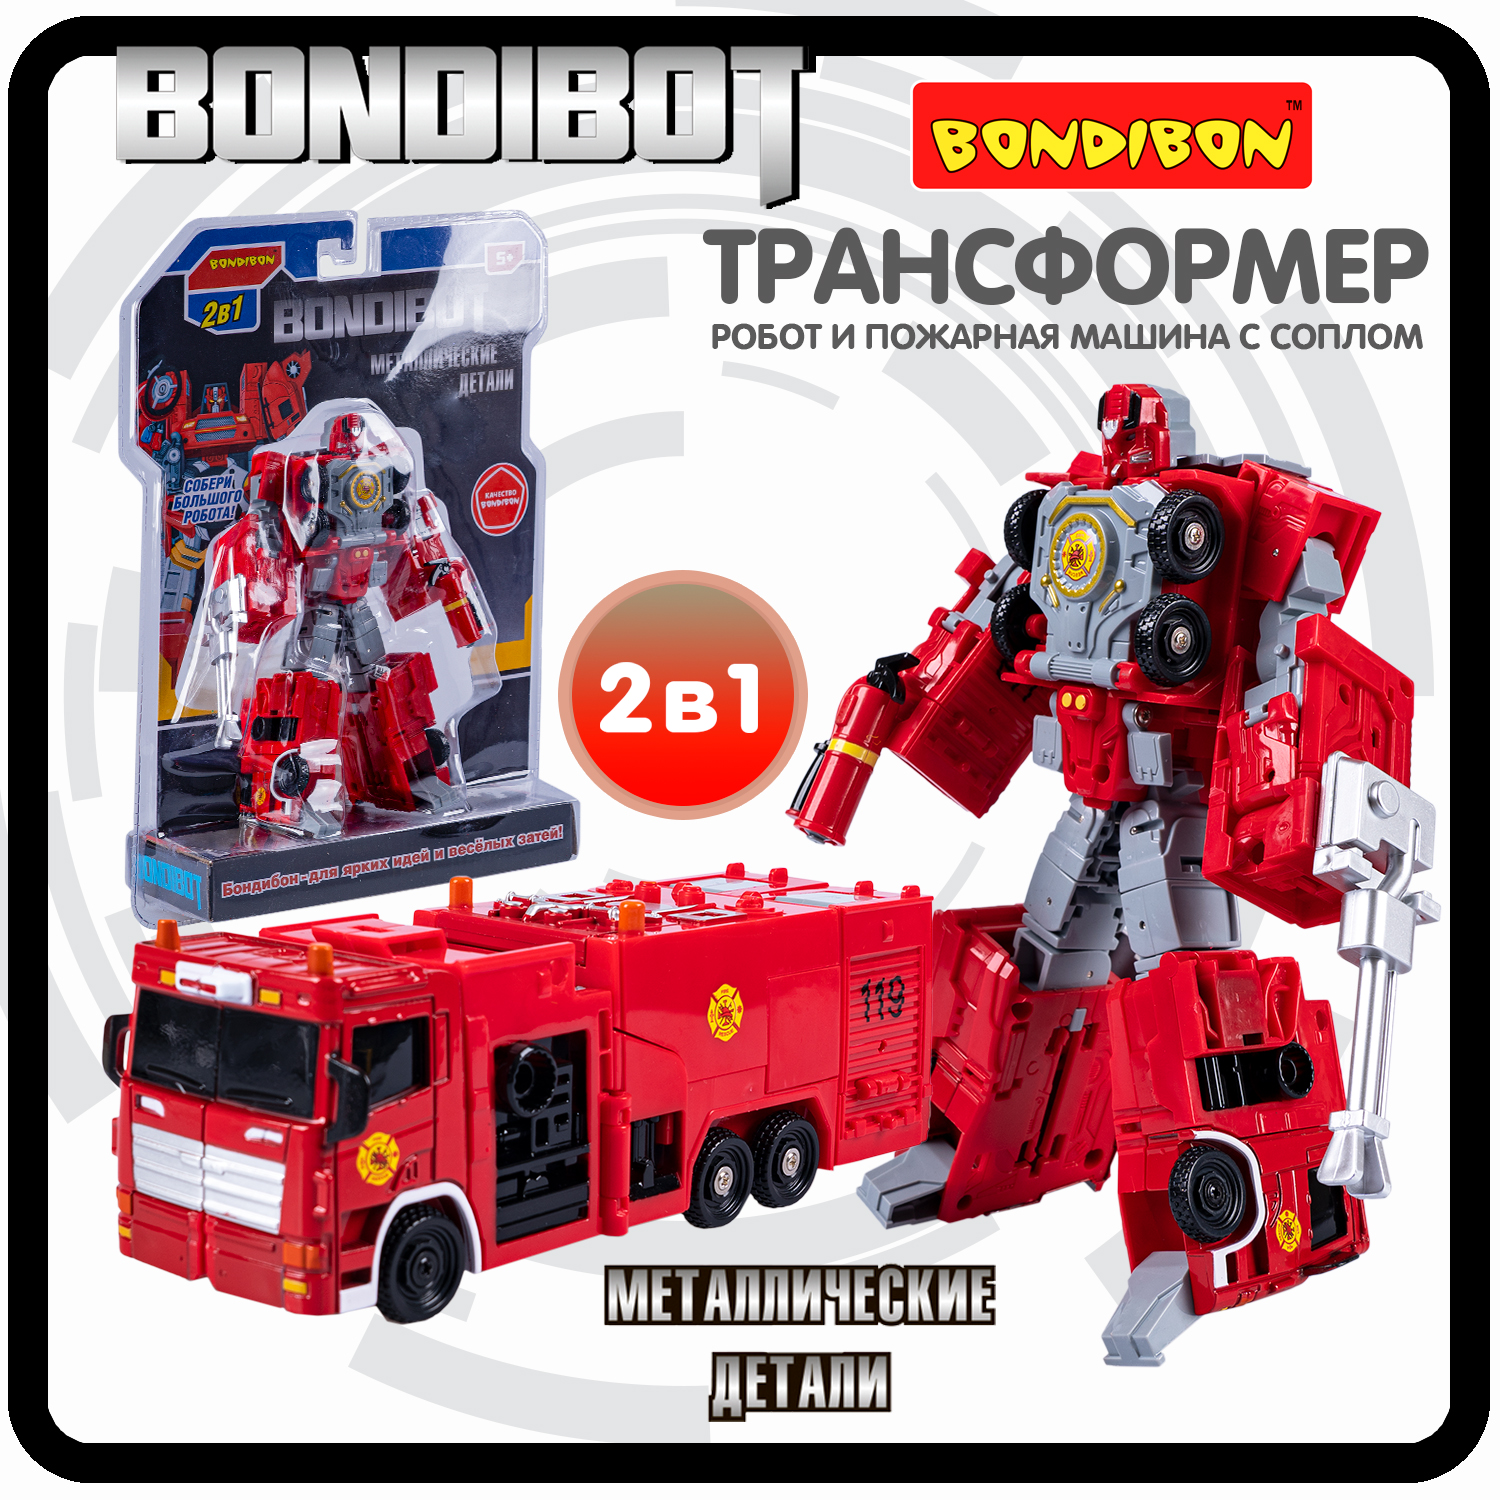 Робот трансформер 2в1 Bondibon BONDIBOT пожарная машина с соплом bondibon трансформер bondibot 2 в 1 робот машина